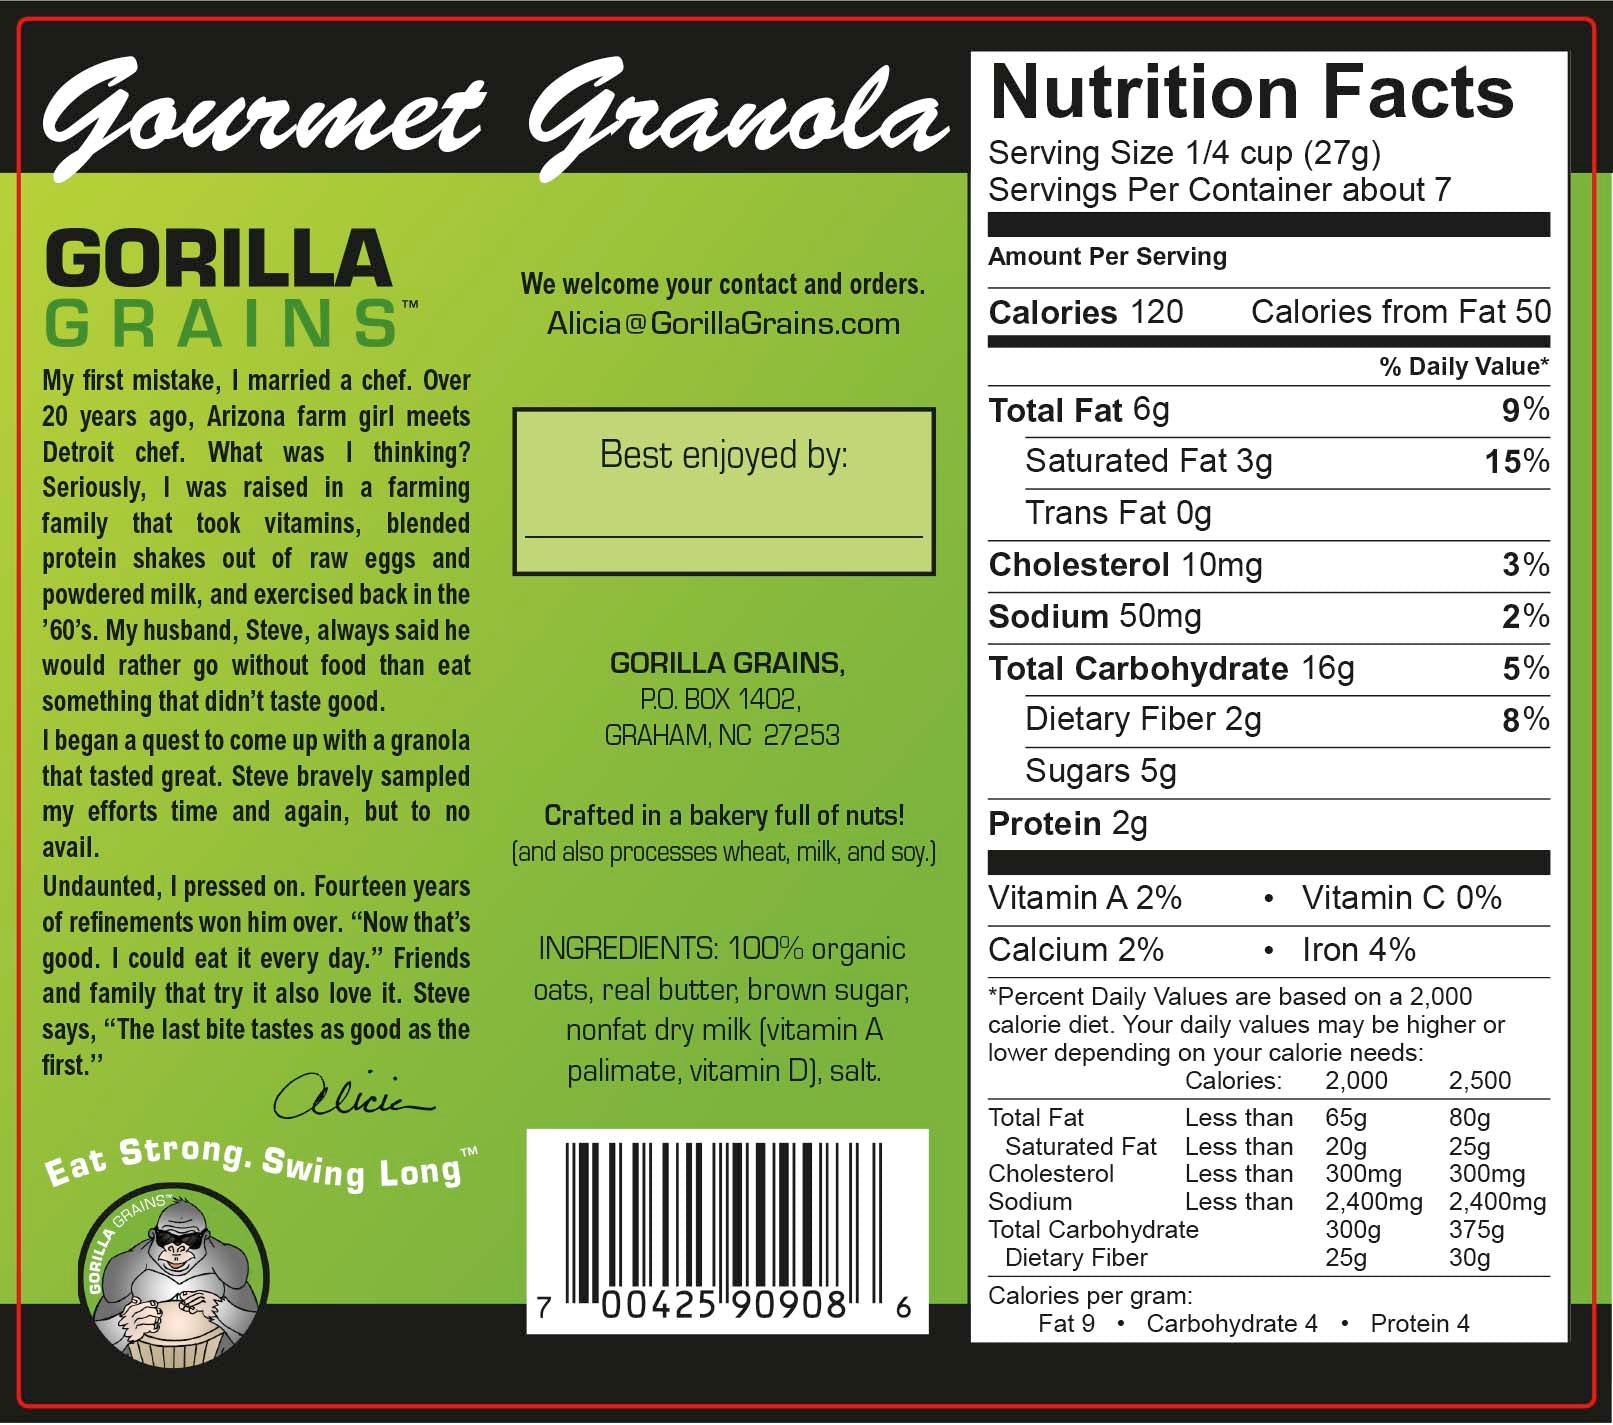 Gorilla Grains - Original